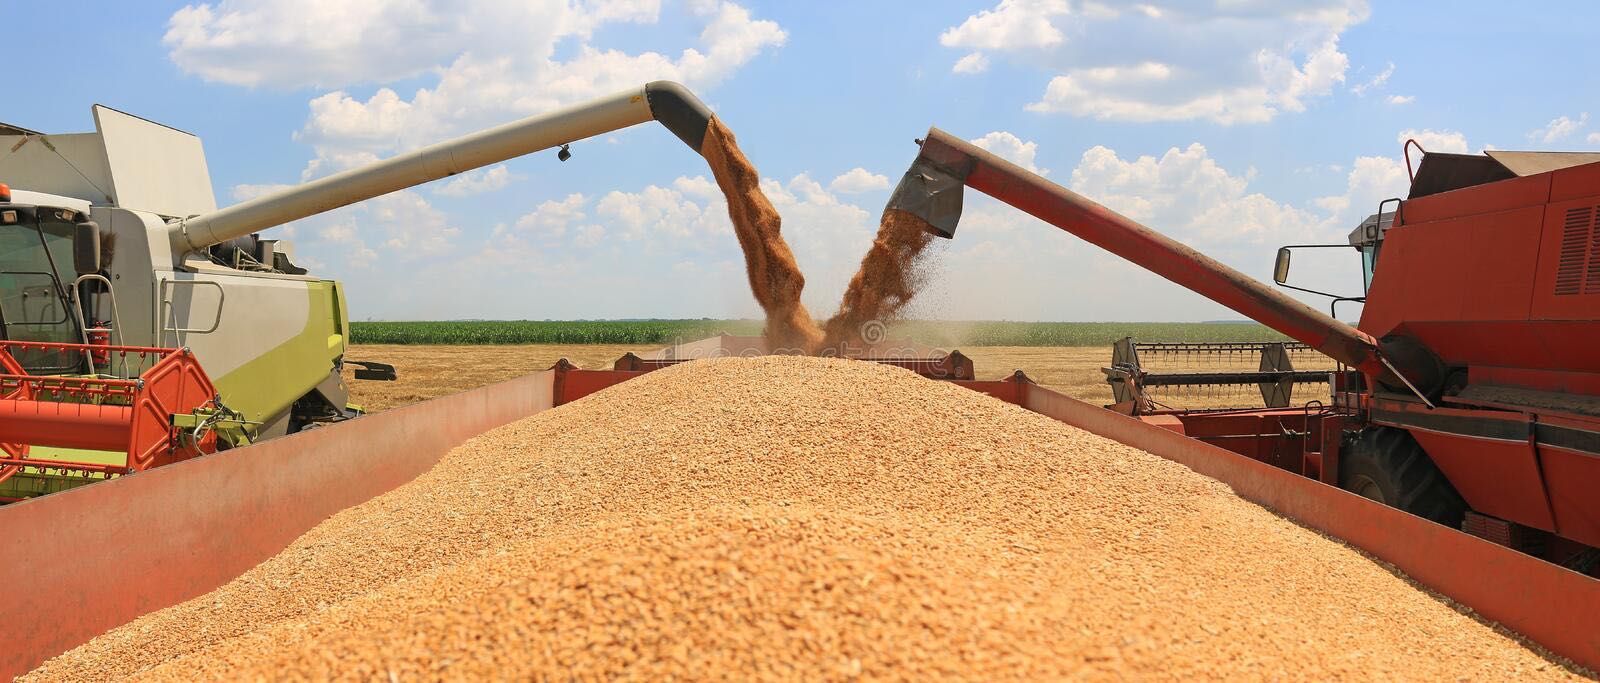 Доставка по Казахстану ячмень зерно пшеница бидай